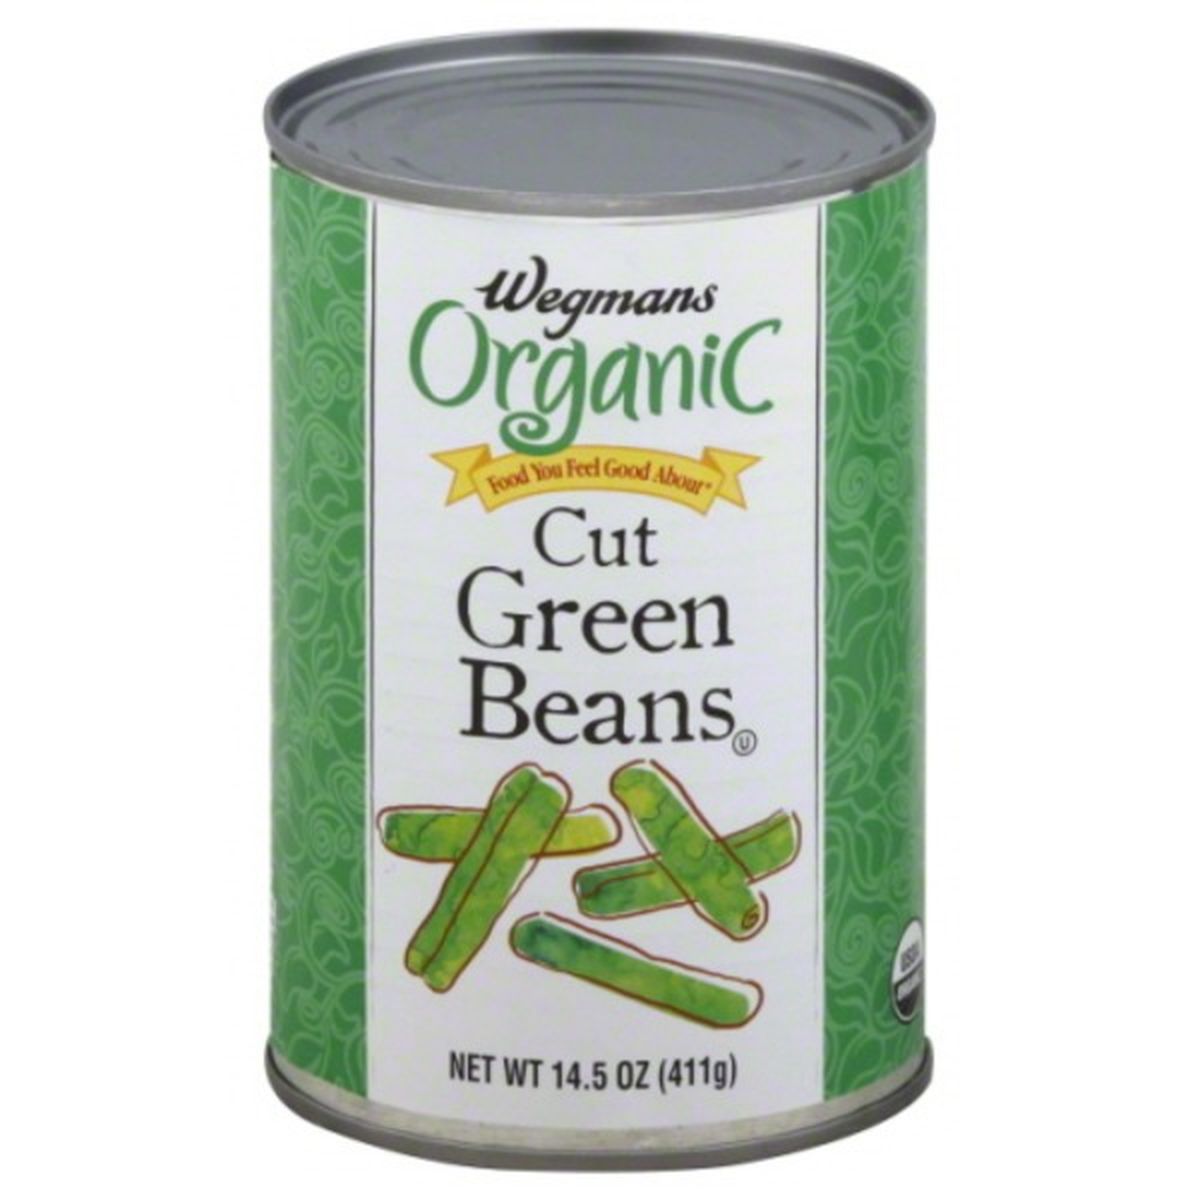 Calories in Wegmans Organic Cut Green Beans